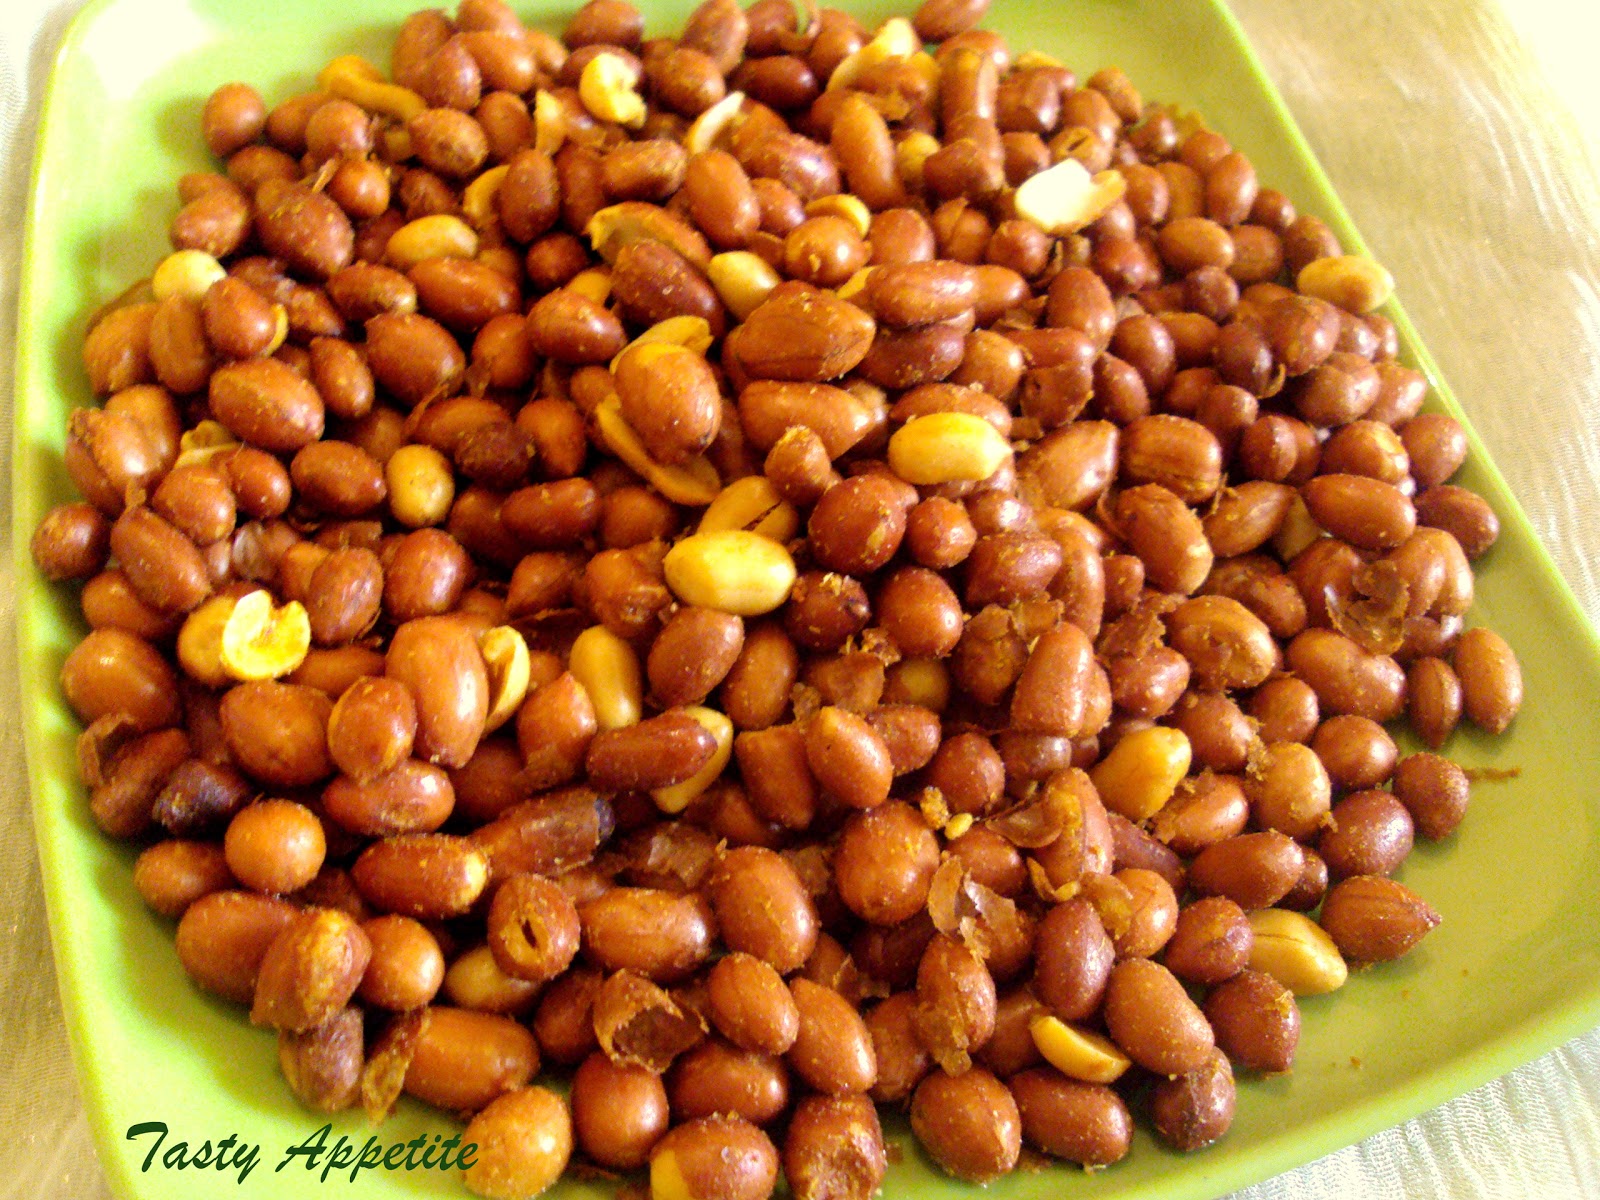 spiced-roasted-peanuts-healthy-snacks-recipes